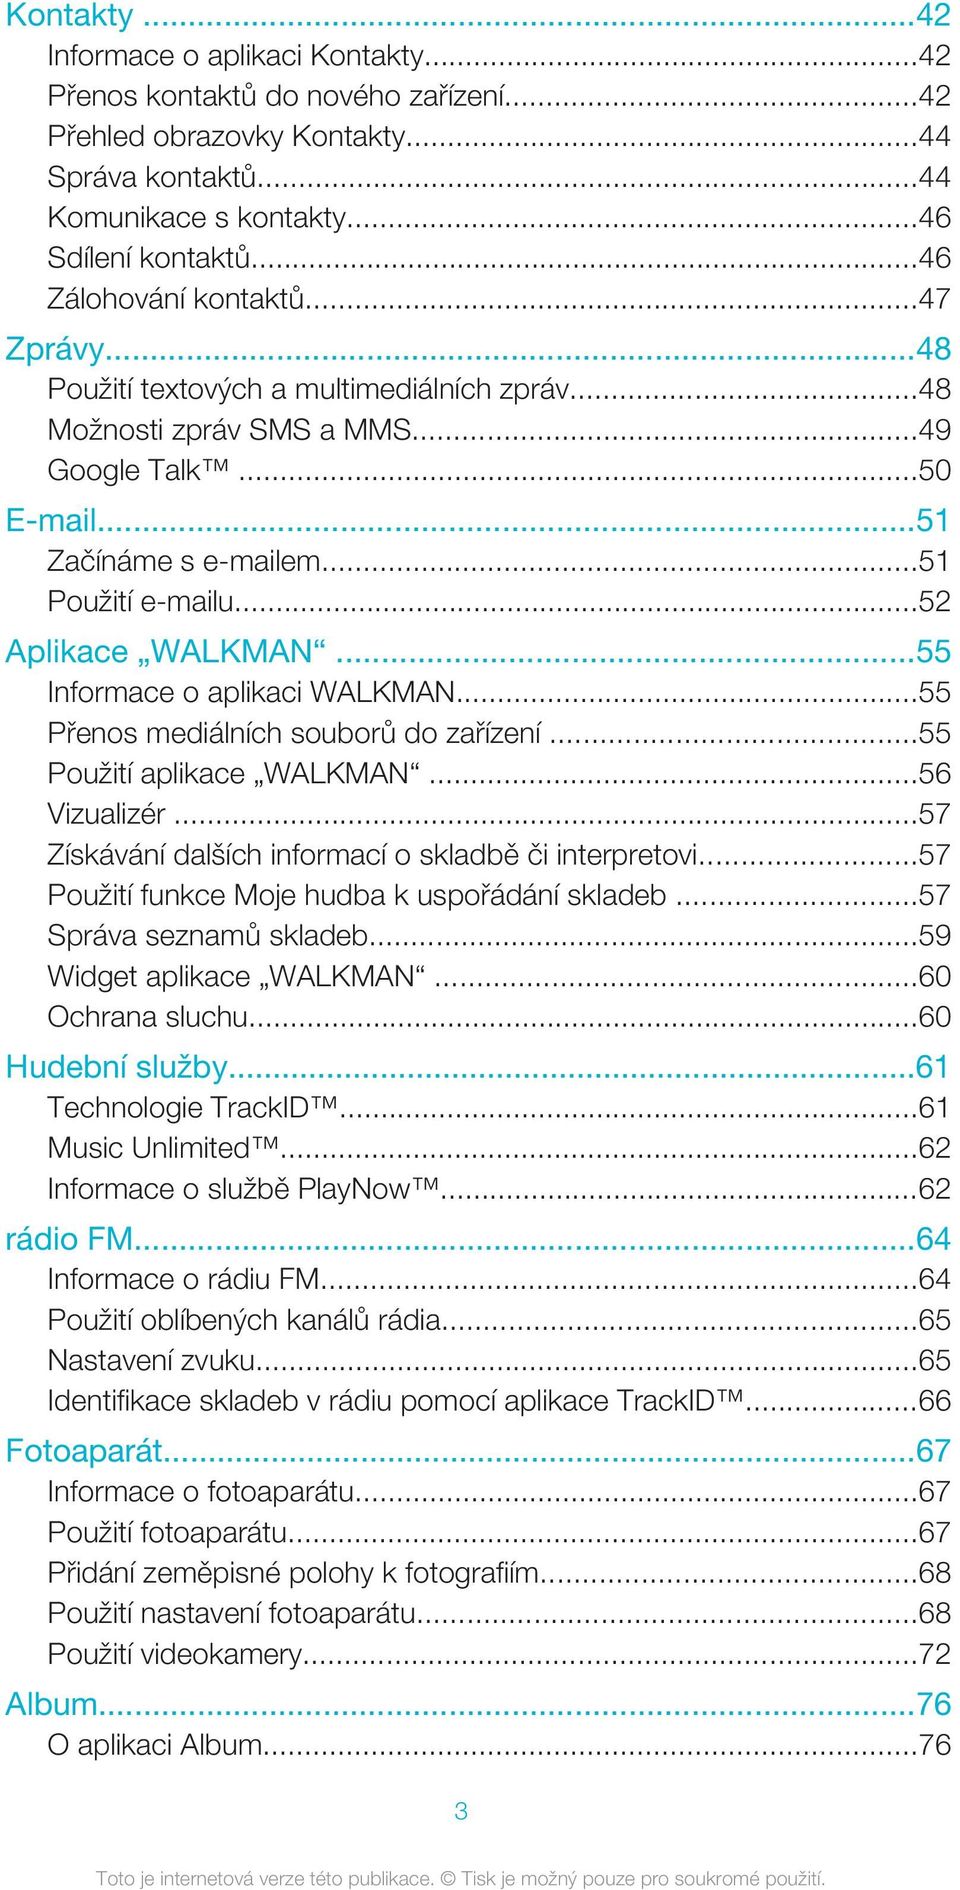 ..52 Aplikace WALKMAN...55 Informace o aplikaci WALKMAN...55 Přenos mediálních souborů do zařízení...55 Použití aplikace WALKMAN...56 Vizualizér.